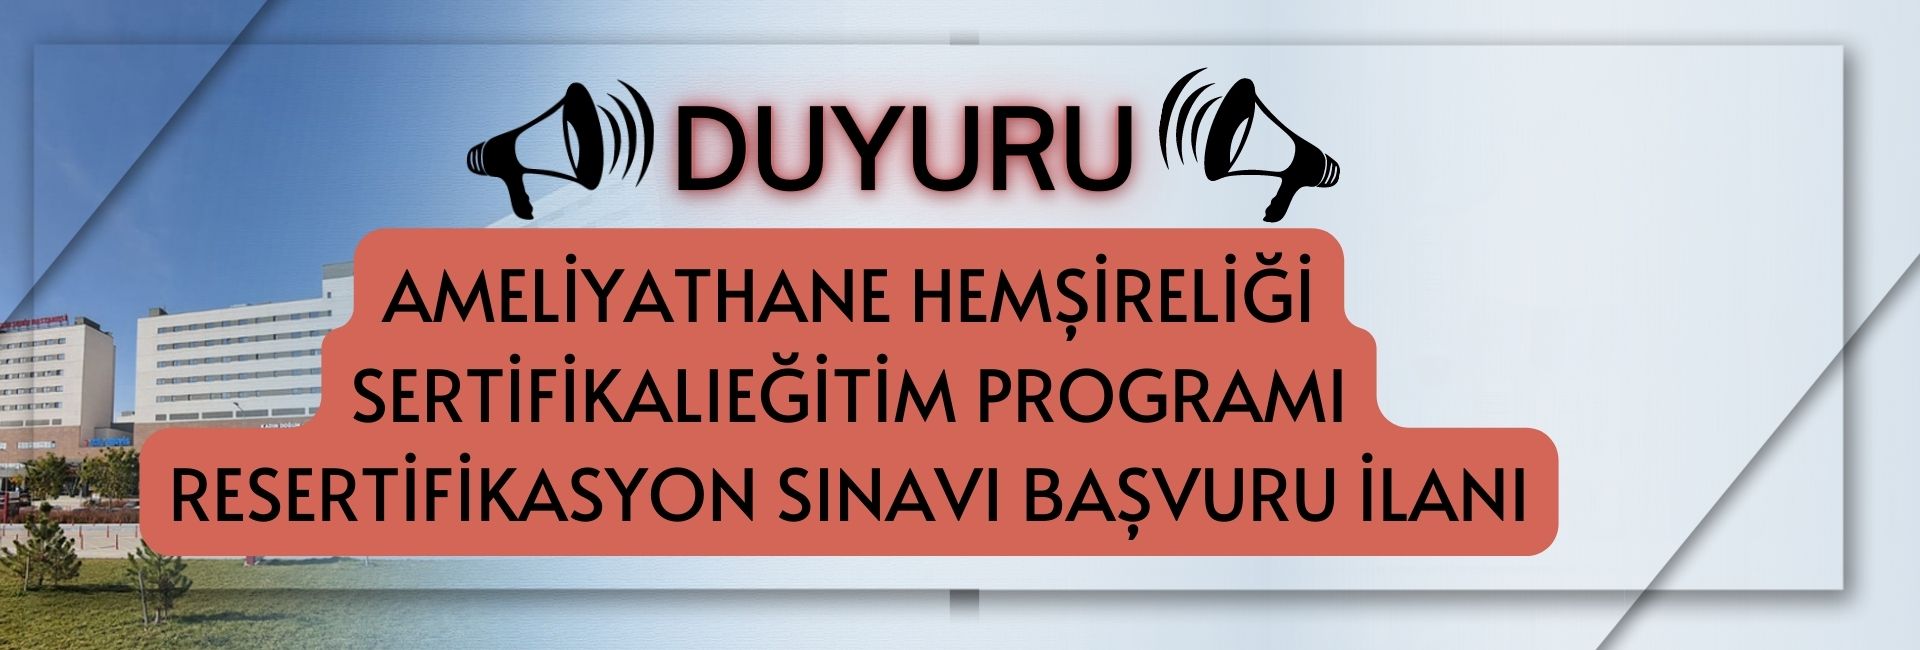 Elazığ Fethi Sekin Şehir Hastanesi Ameliyathane Hemşireliği Sertifikalı Eğitim Programı Resertifikasyon Sınavı Başvuru İlanı